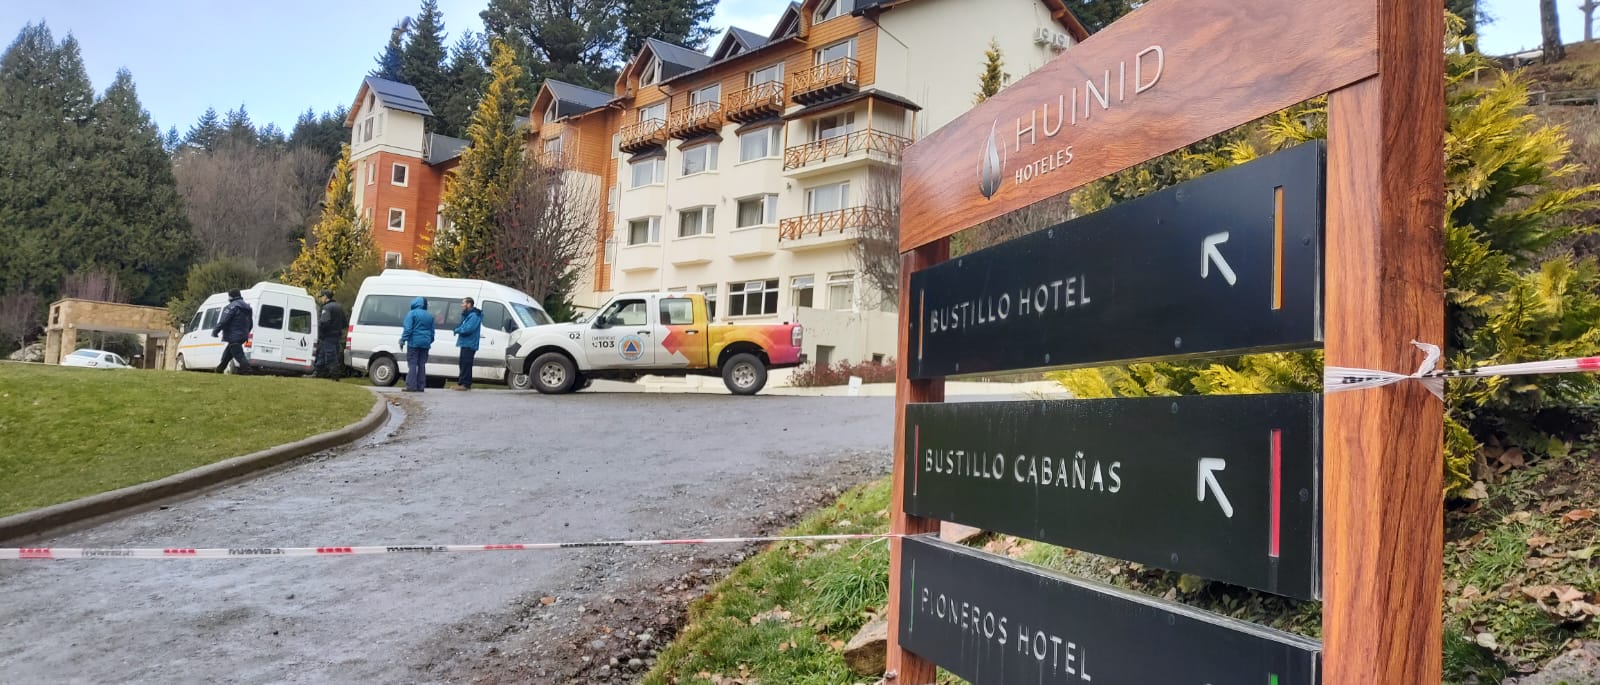 El hotel donde ocurrió la tragedia